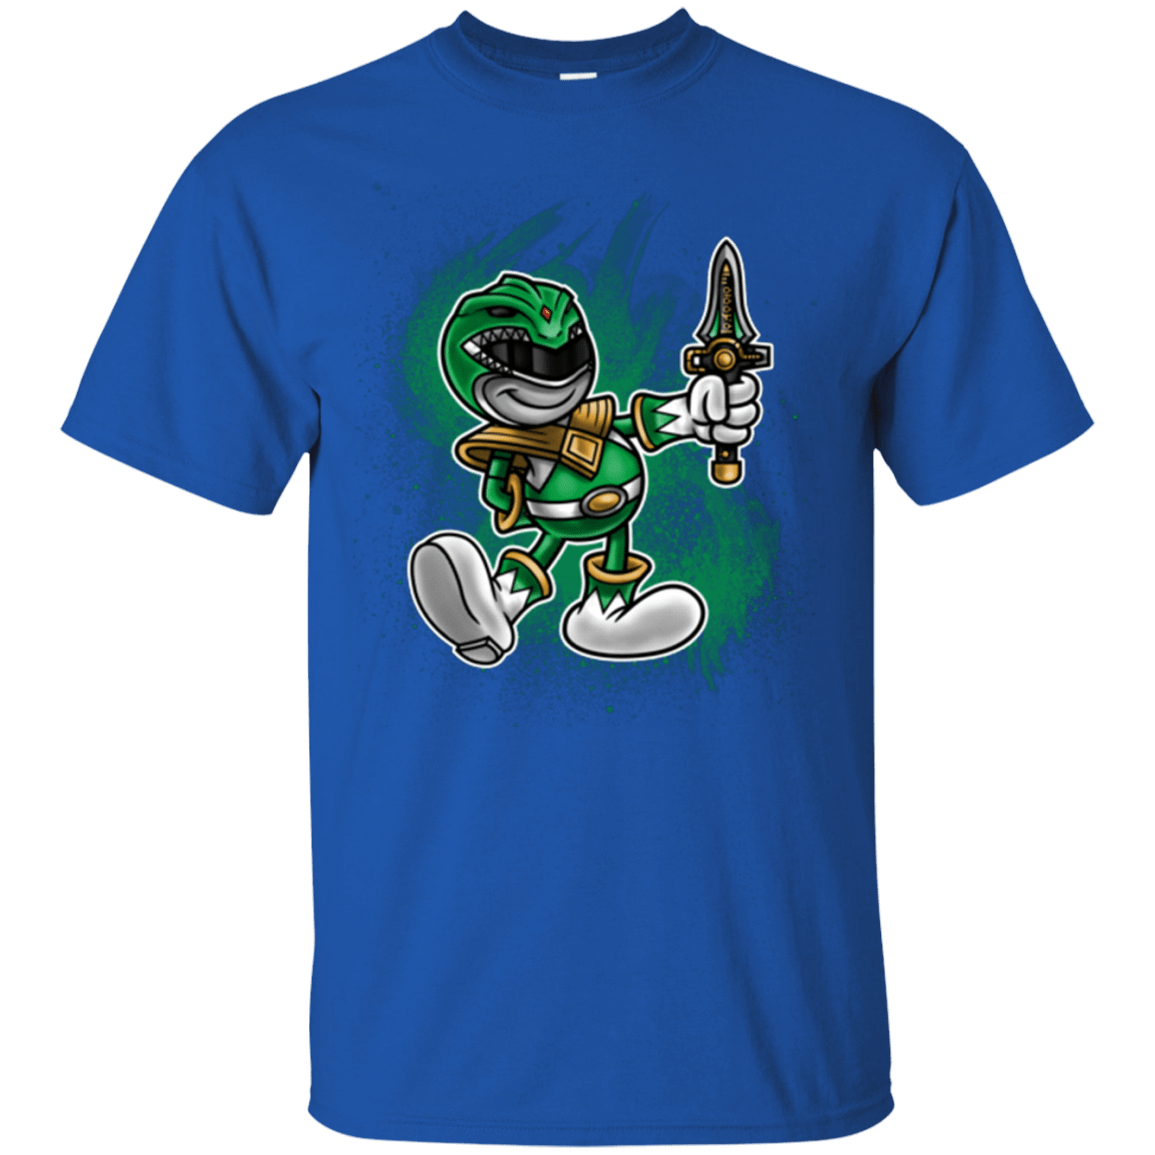 T-Shirts Royal / Small Green Ranger Artwork T-Shirt